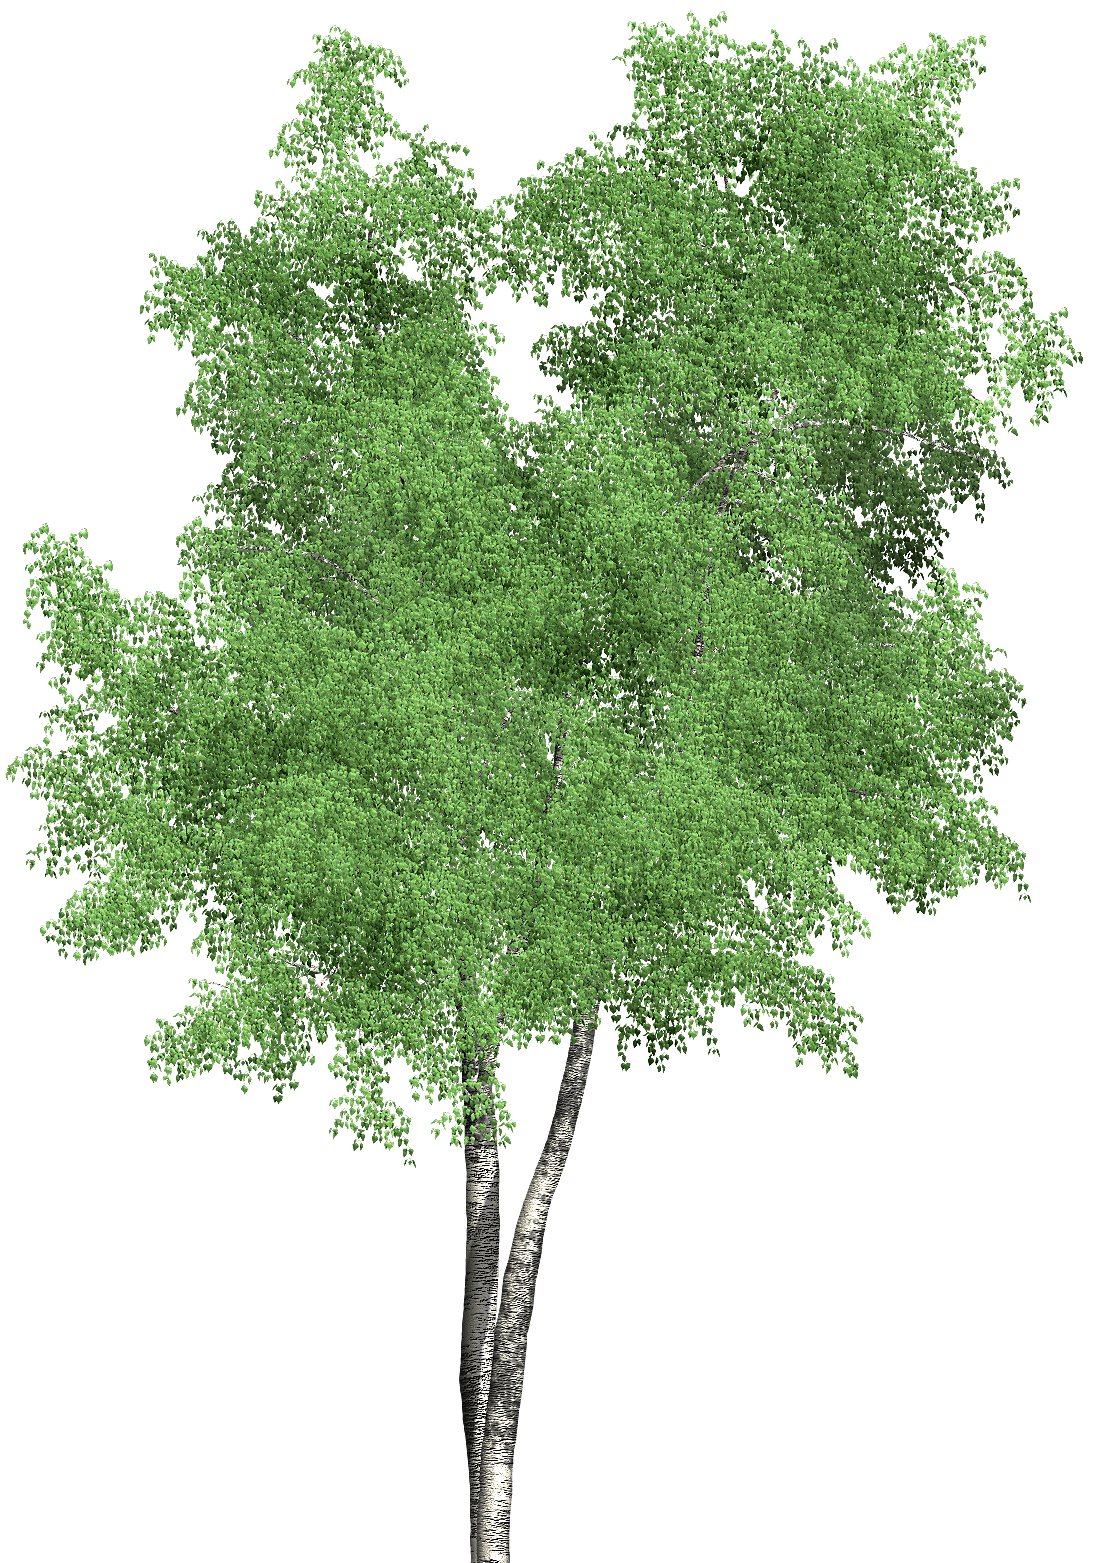 tree01_d.JPG